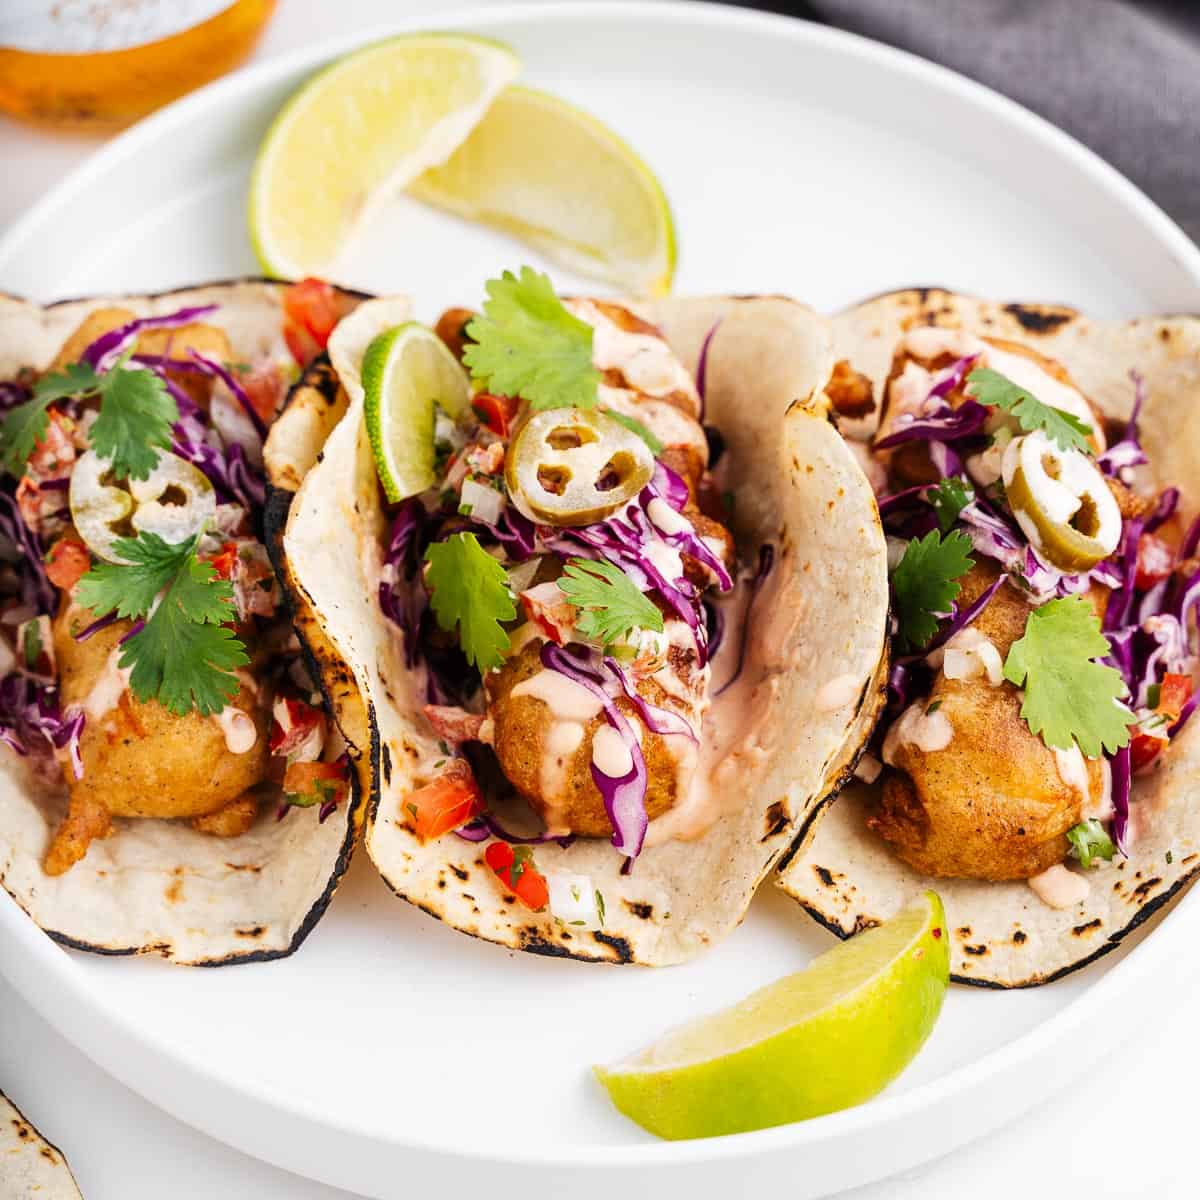 Tasting Ensenada's Finest Fish Tacos: A Quest